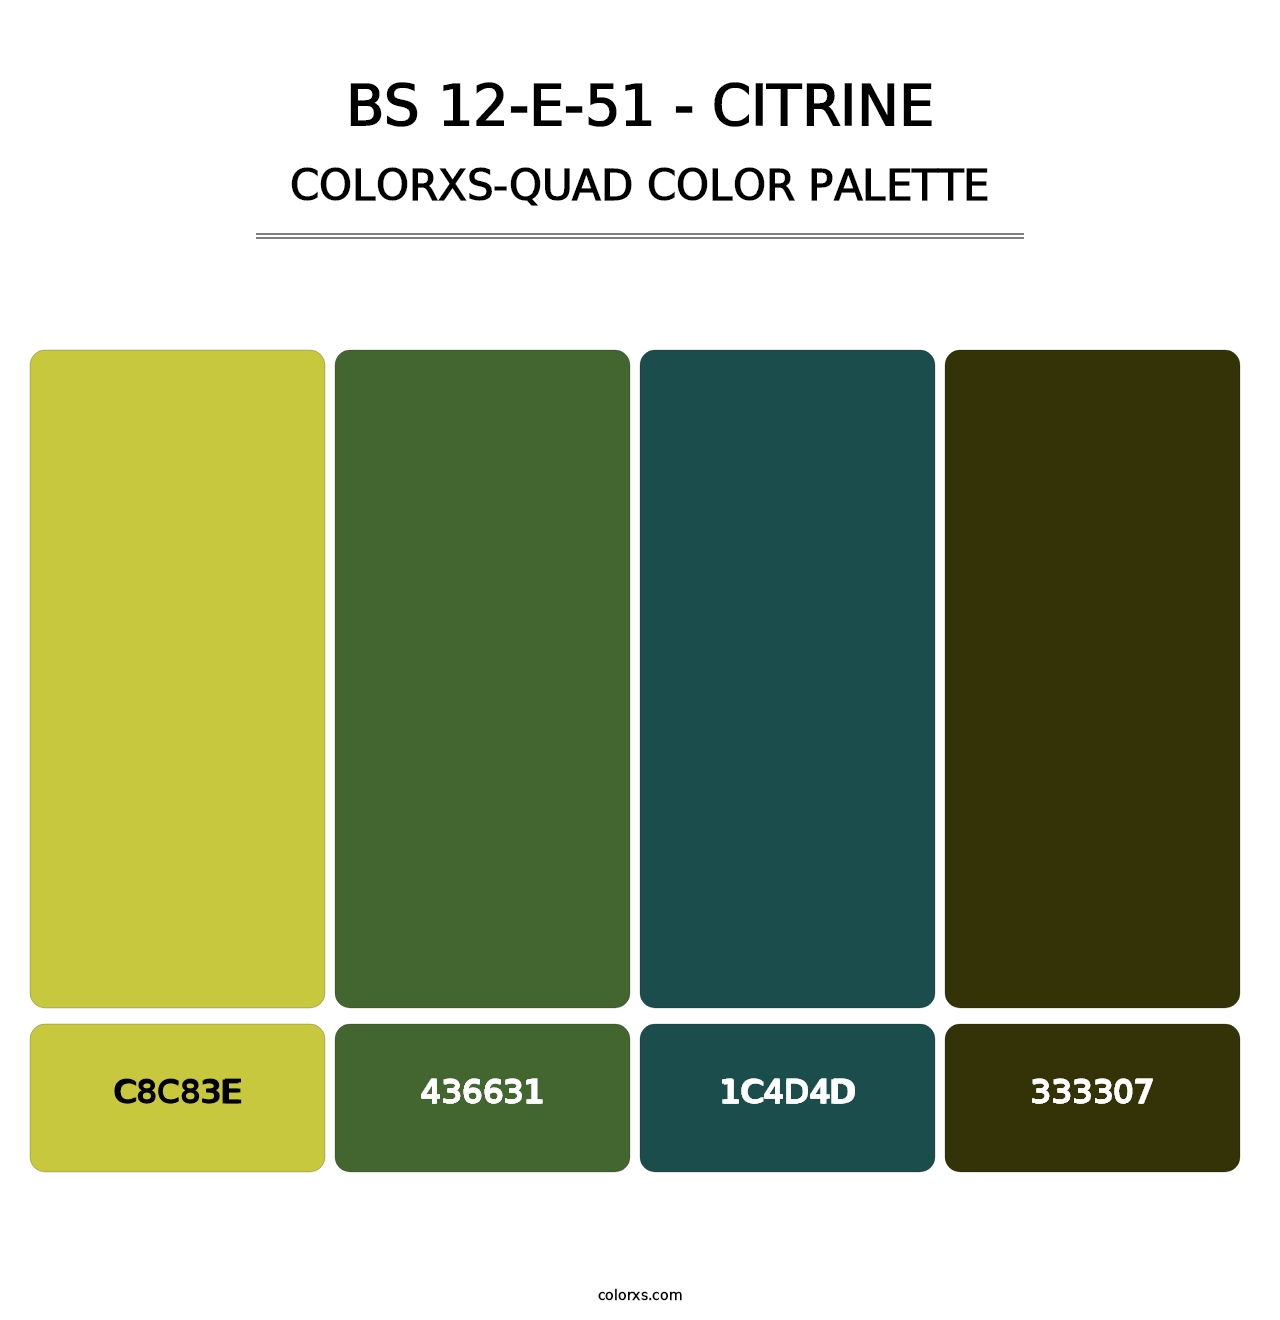 BS 12-E-51 - Citrine - Colorxs Quad Palette